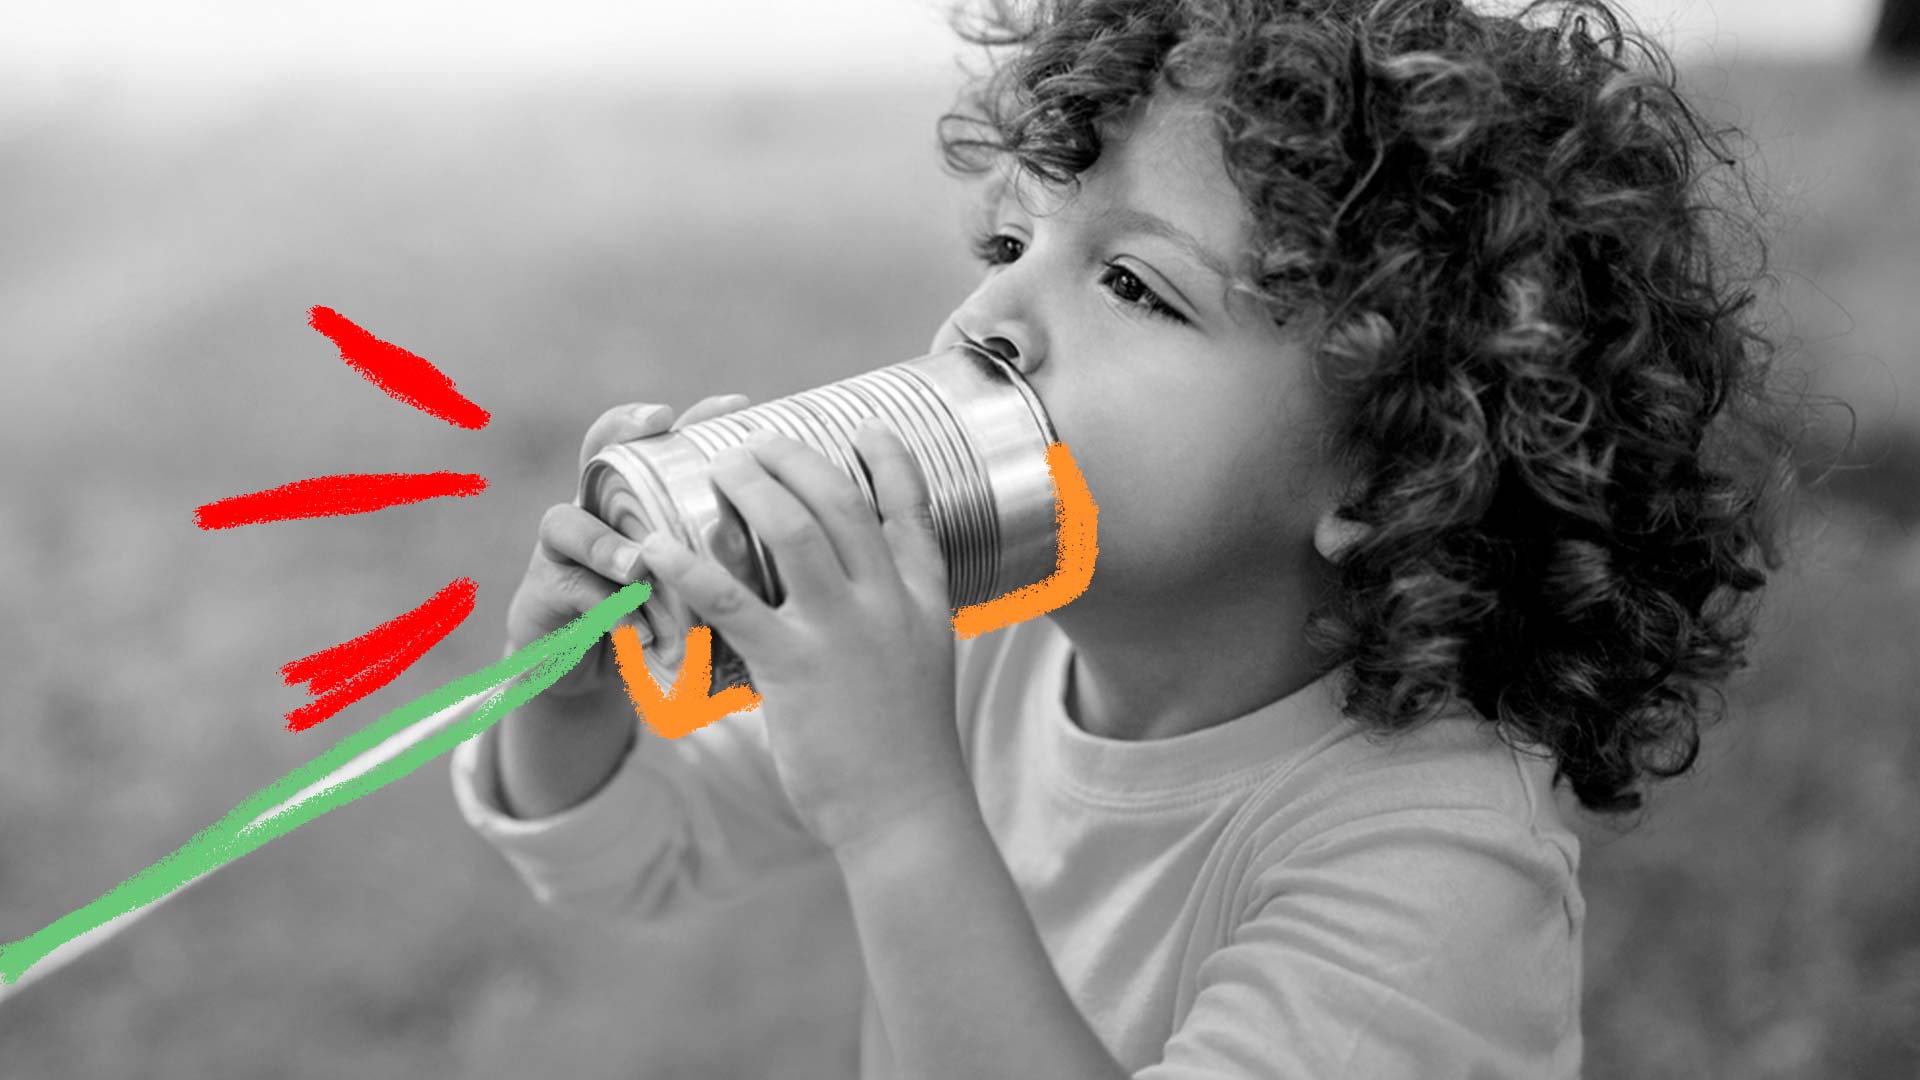 Gincana: foto em preto e branco de uma criança que está com uma lata na boca. A imagem apresenta rabiscos em vermelho, verde e laranja.